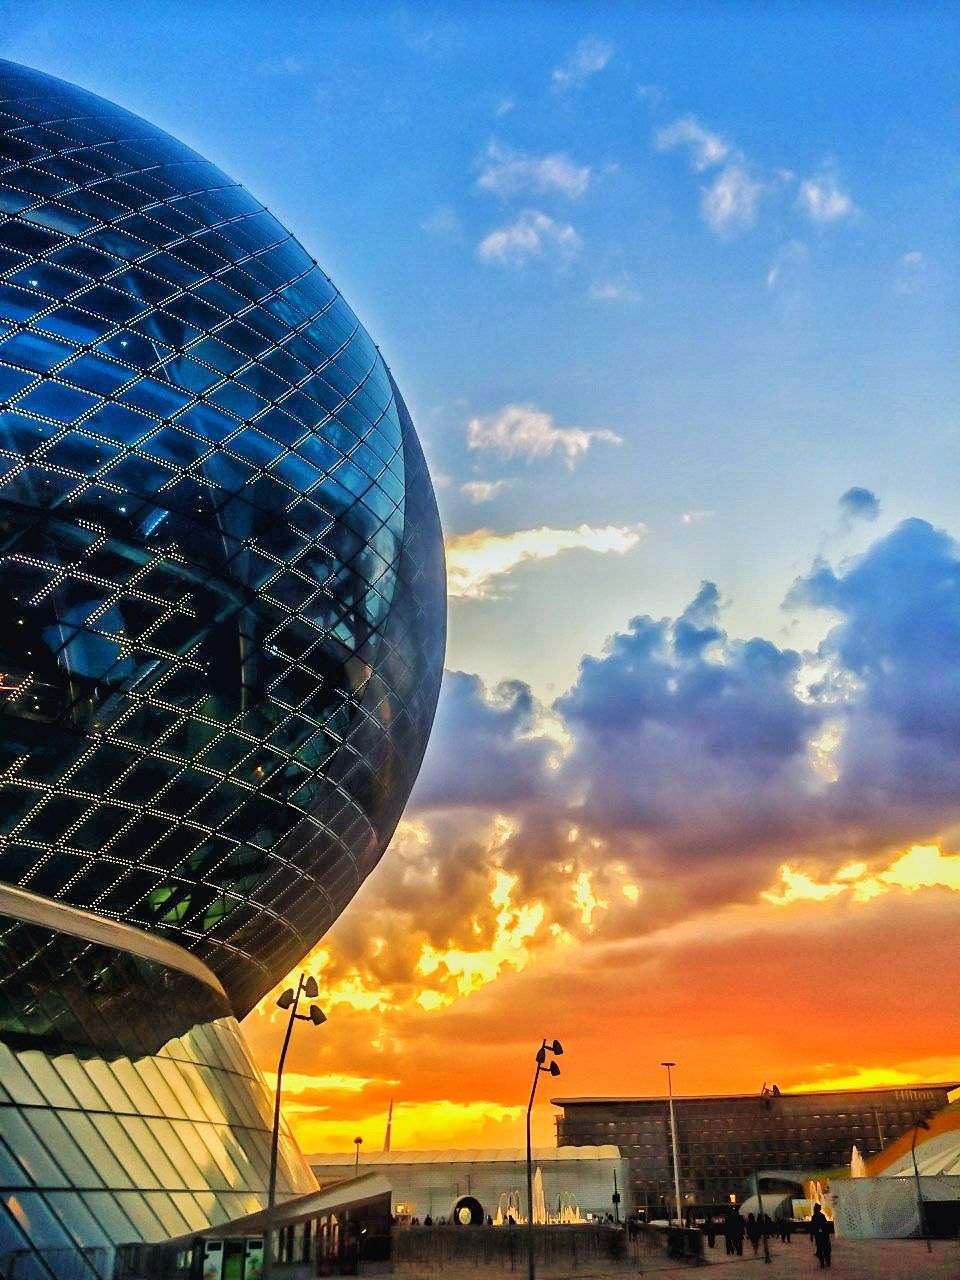 Nur Alem, sphère de verre construite pour l'Expo 2017 d'Astana / photo de Max Saginbayev